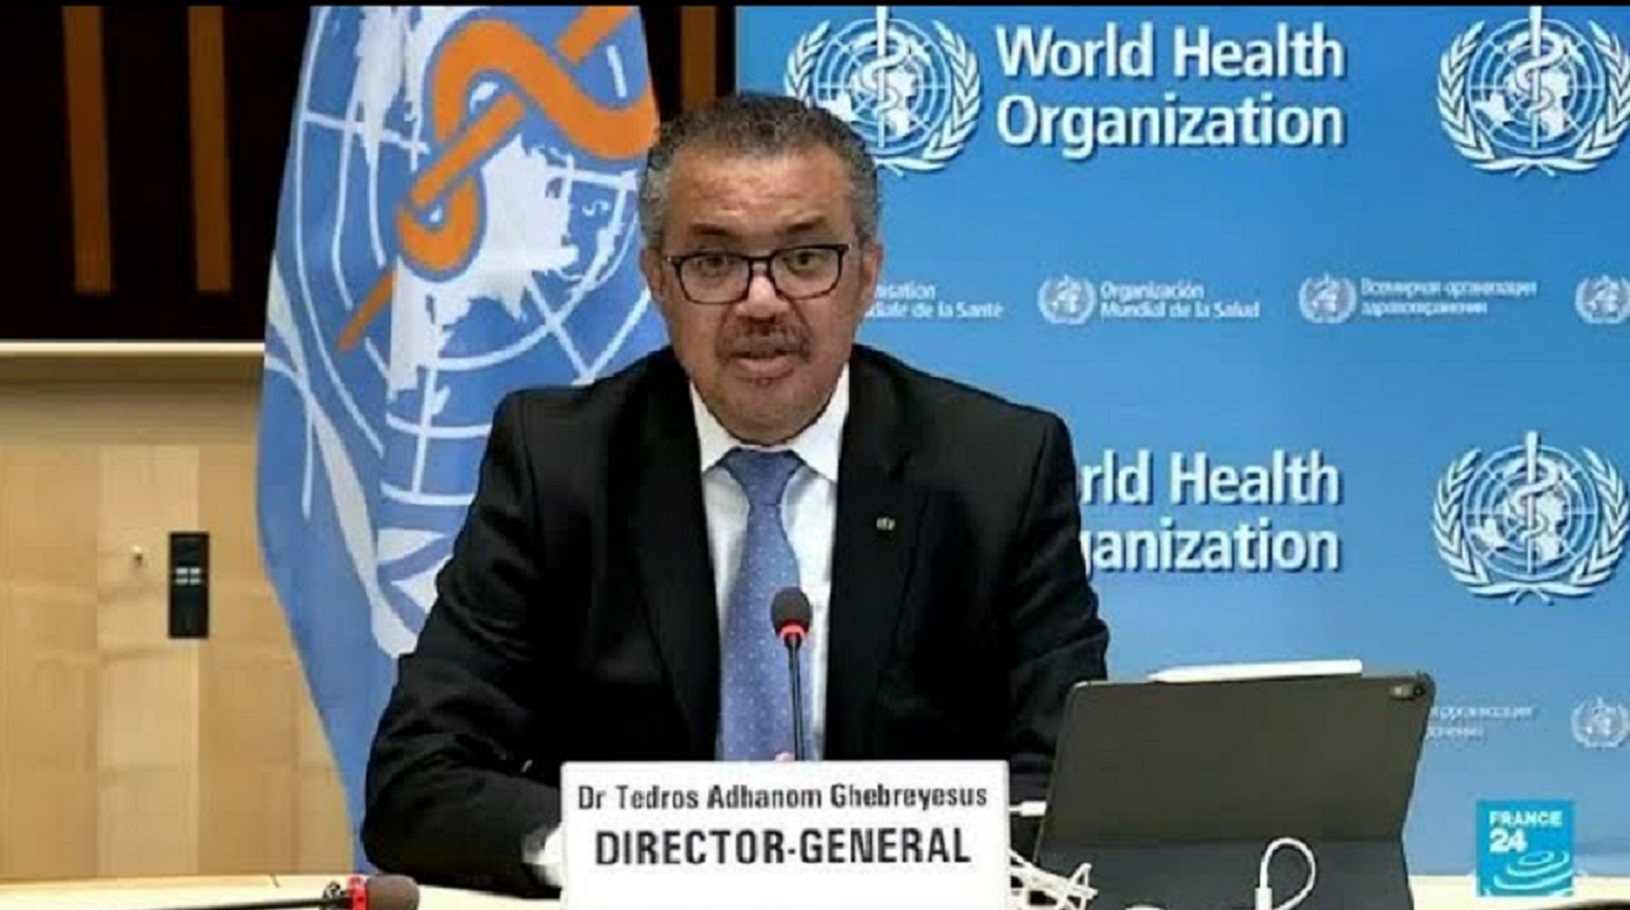 رئيس منظمة الصحة العالمية تيدروس أدهانوم غيبريسوس يتحدث في مقر منظمة الصحة العالمية في جنيف، سويسرا 